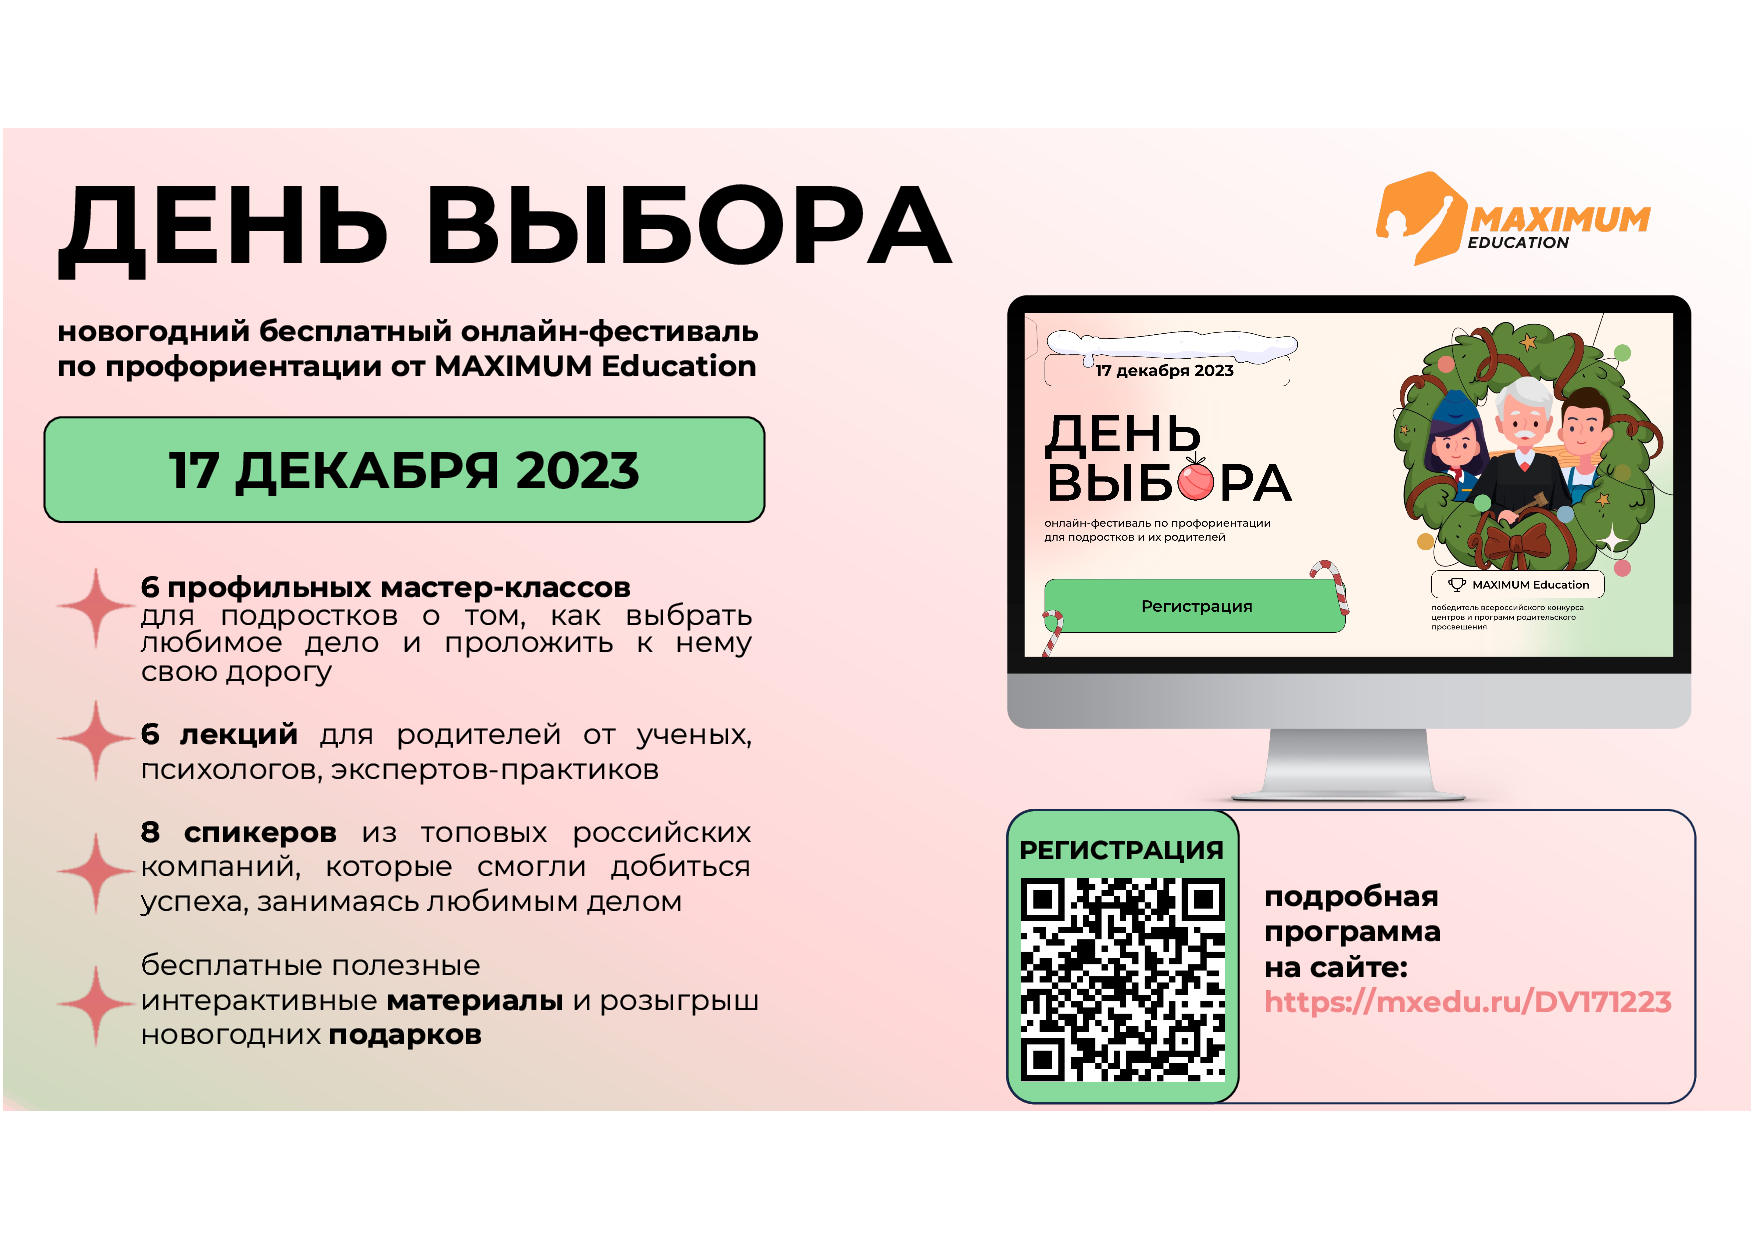 Всероссийский онлайн-фестиваль  по профориентации «День выбора».